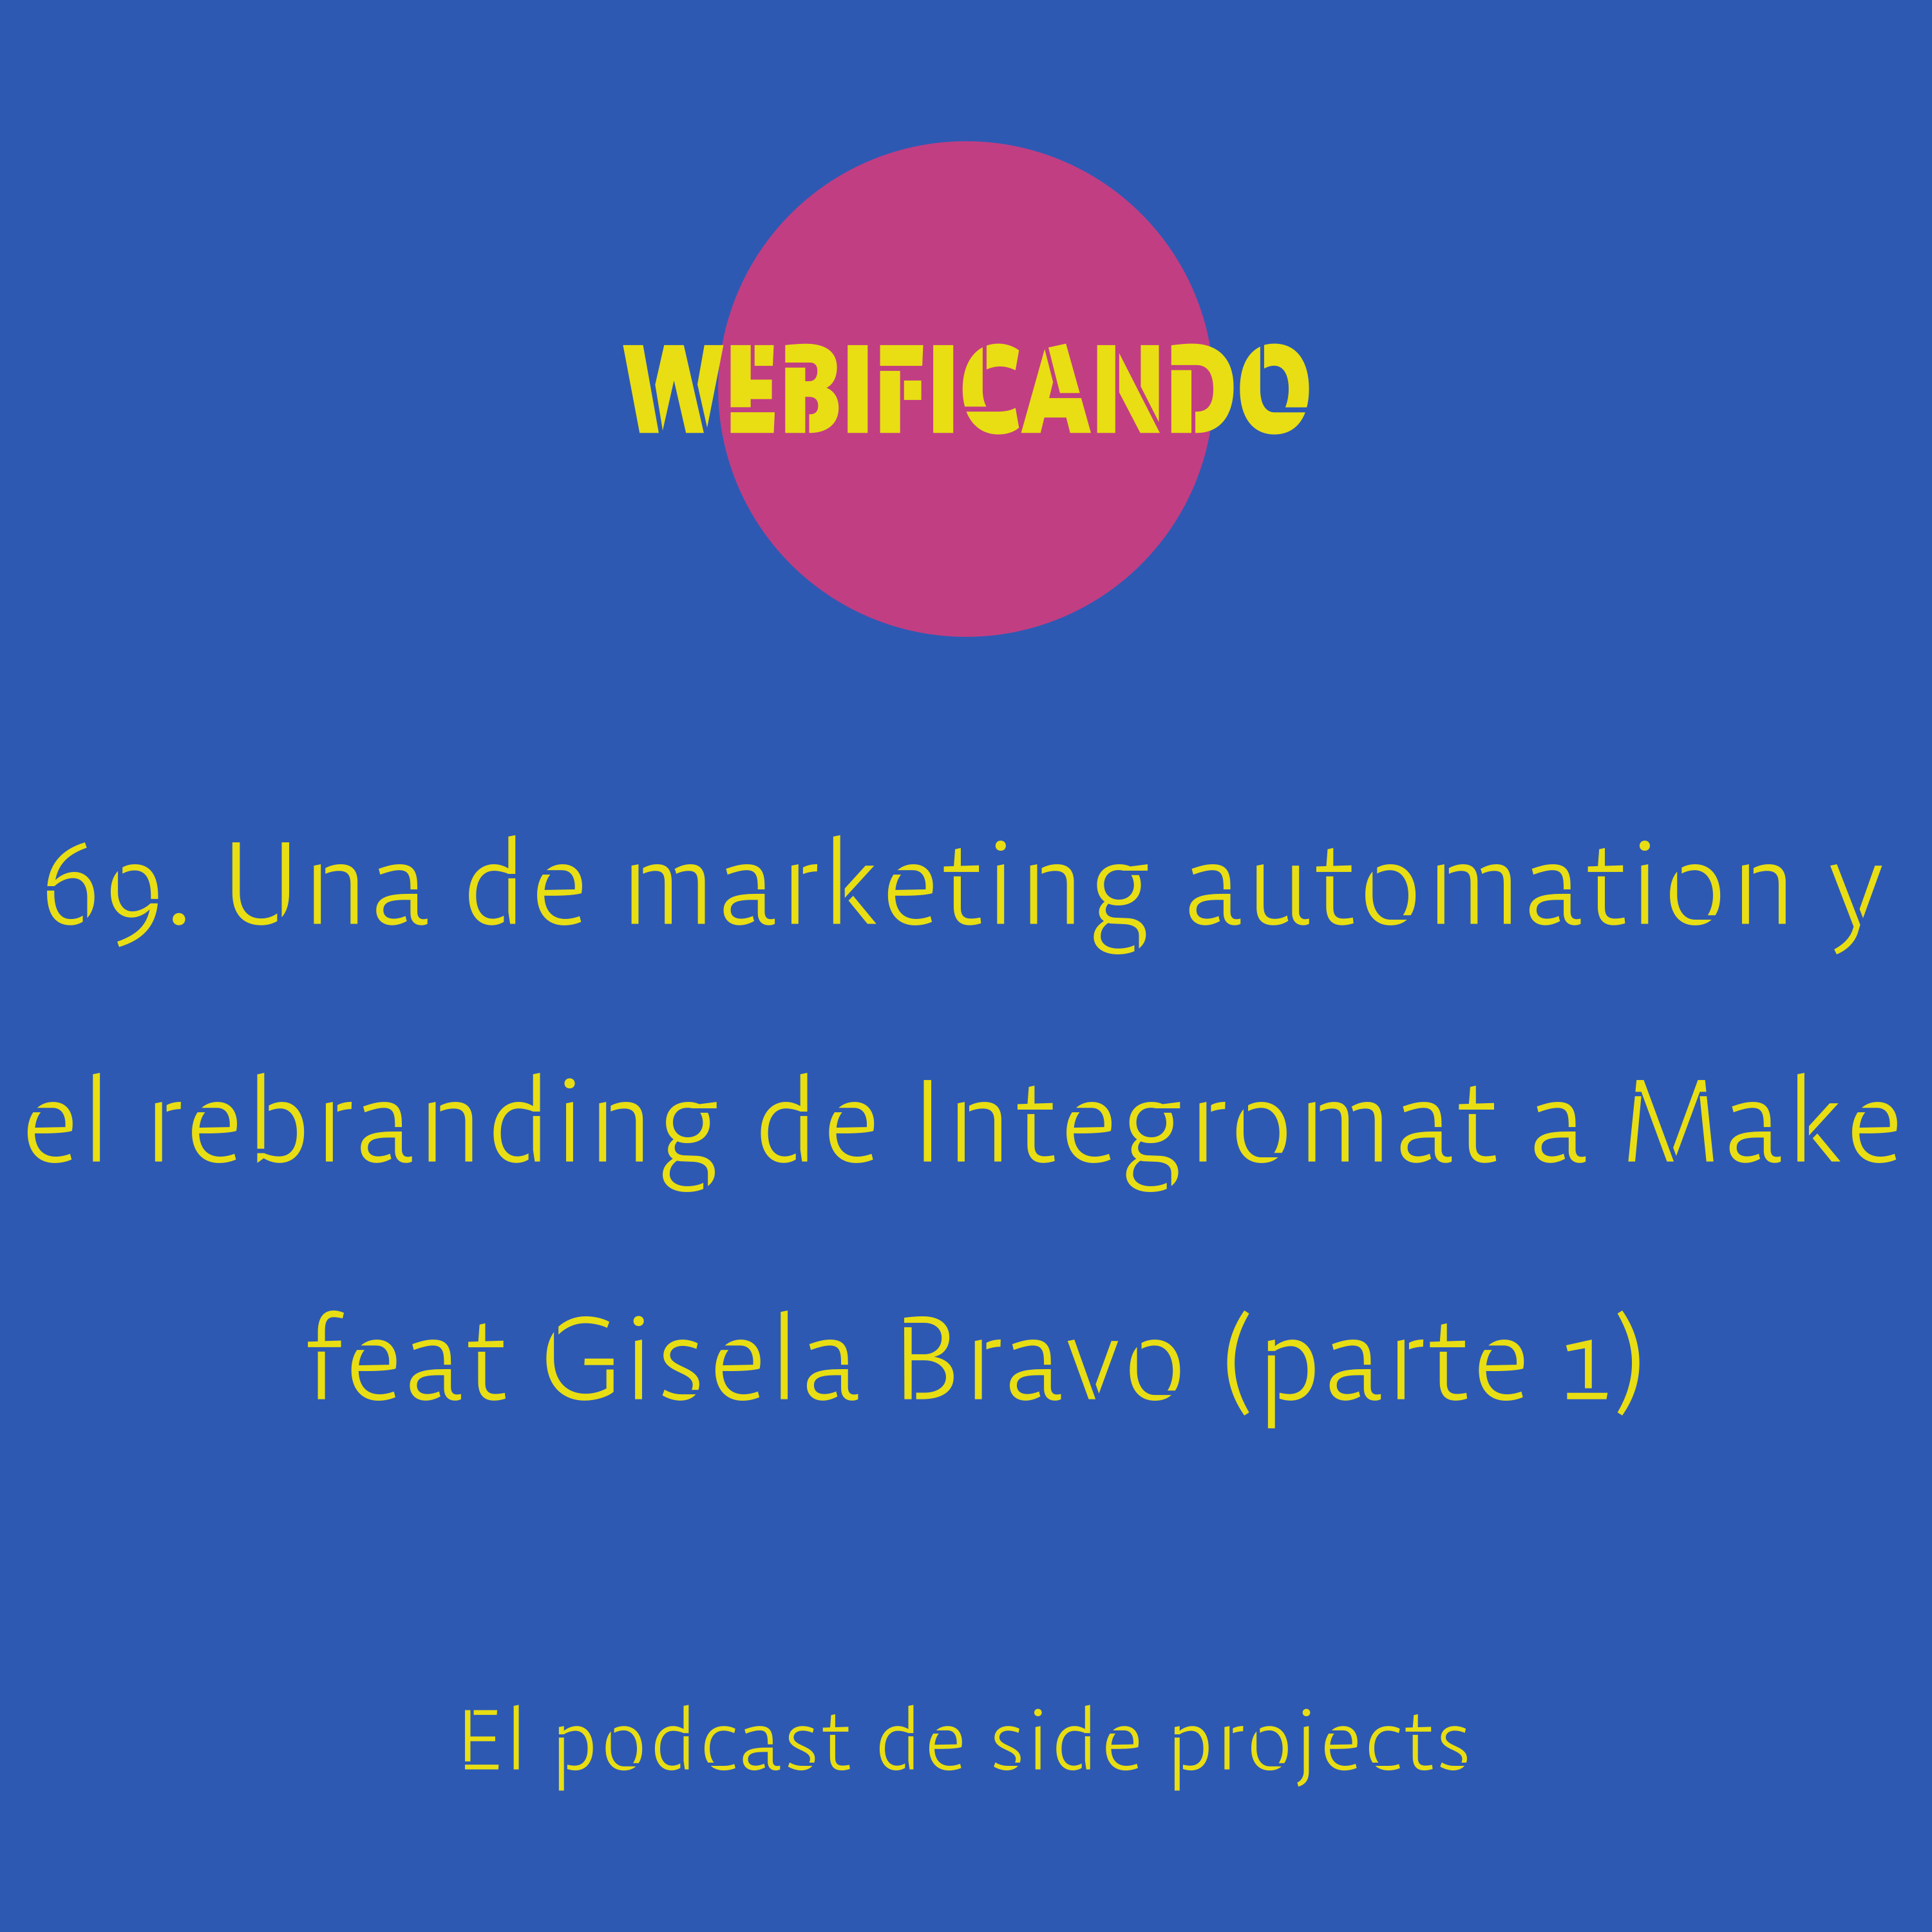 69. Una de marketing automation, el rebranding de Integromat a Make y mucho más feat Gisela Bravo (parte 1)